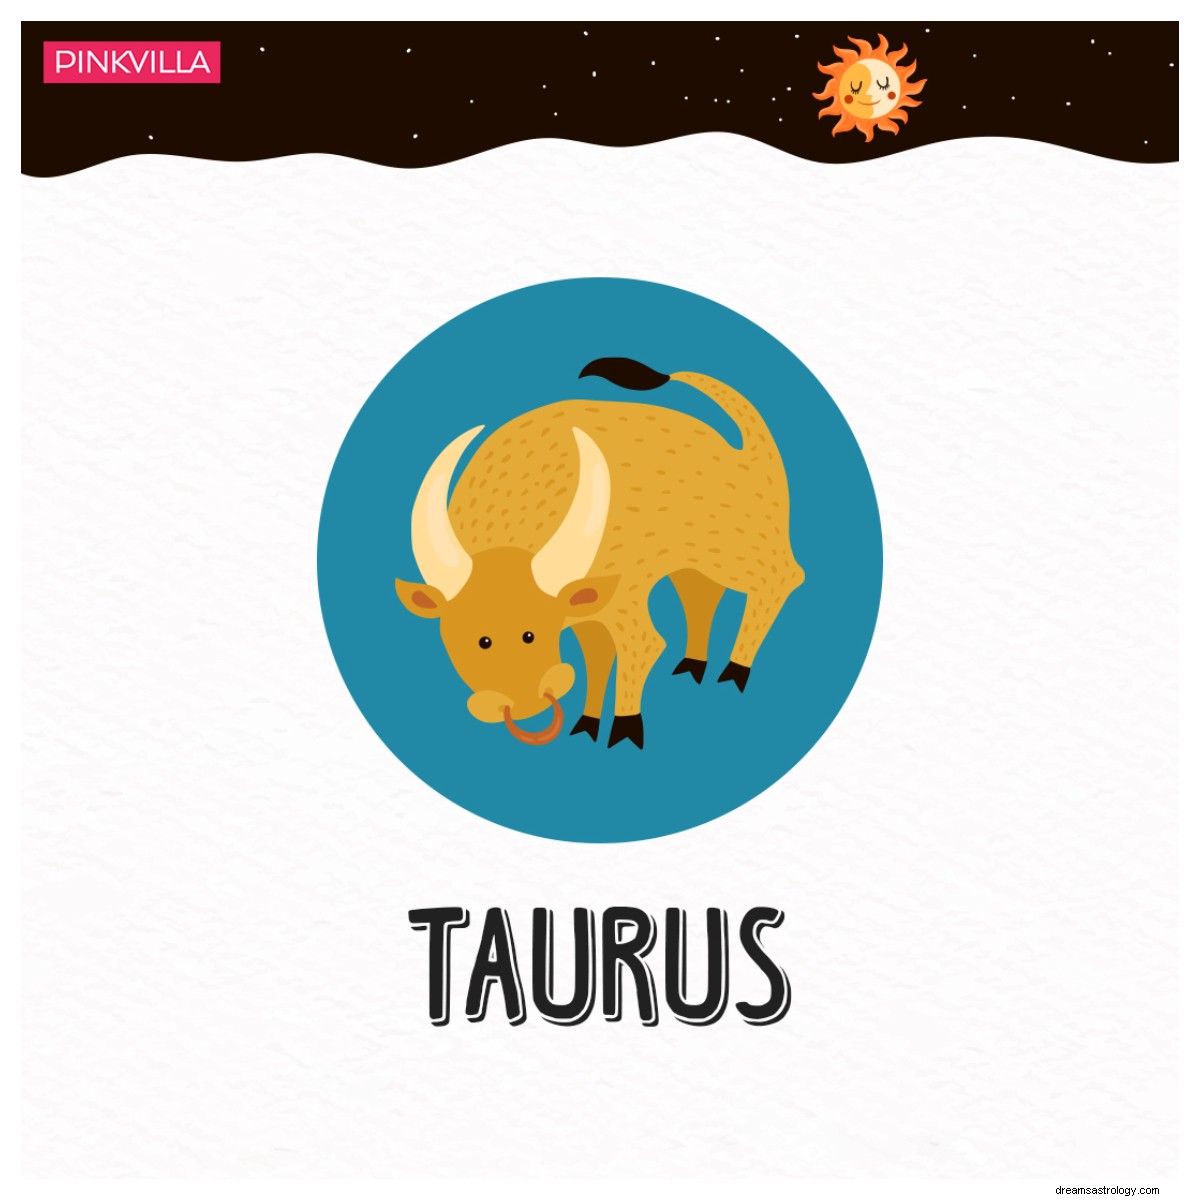 De Piscis a Tauro:4 signos del zodiaco con los que tendrías la química más romántica 